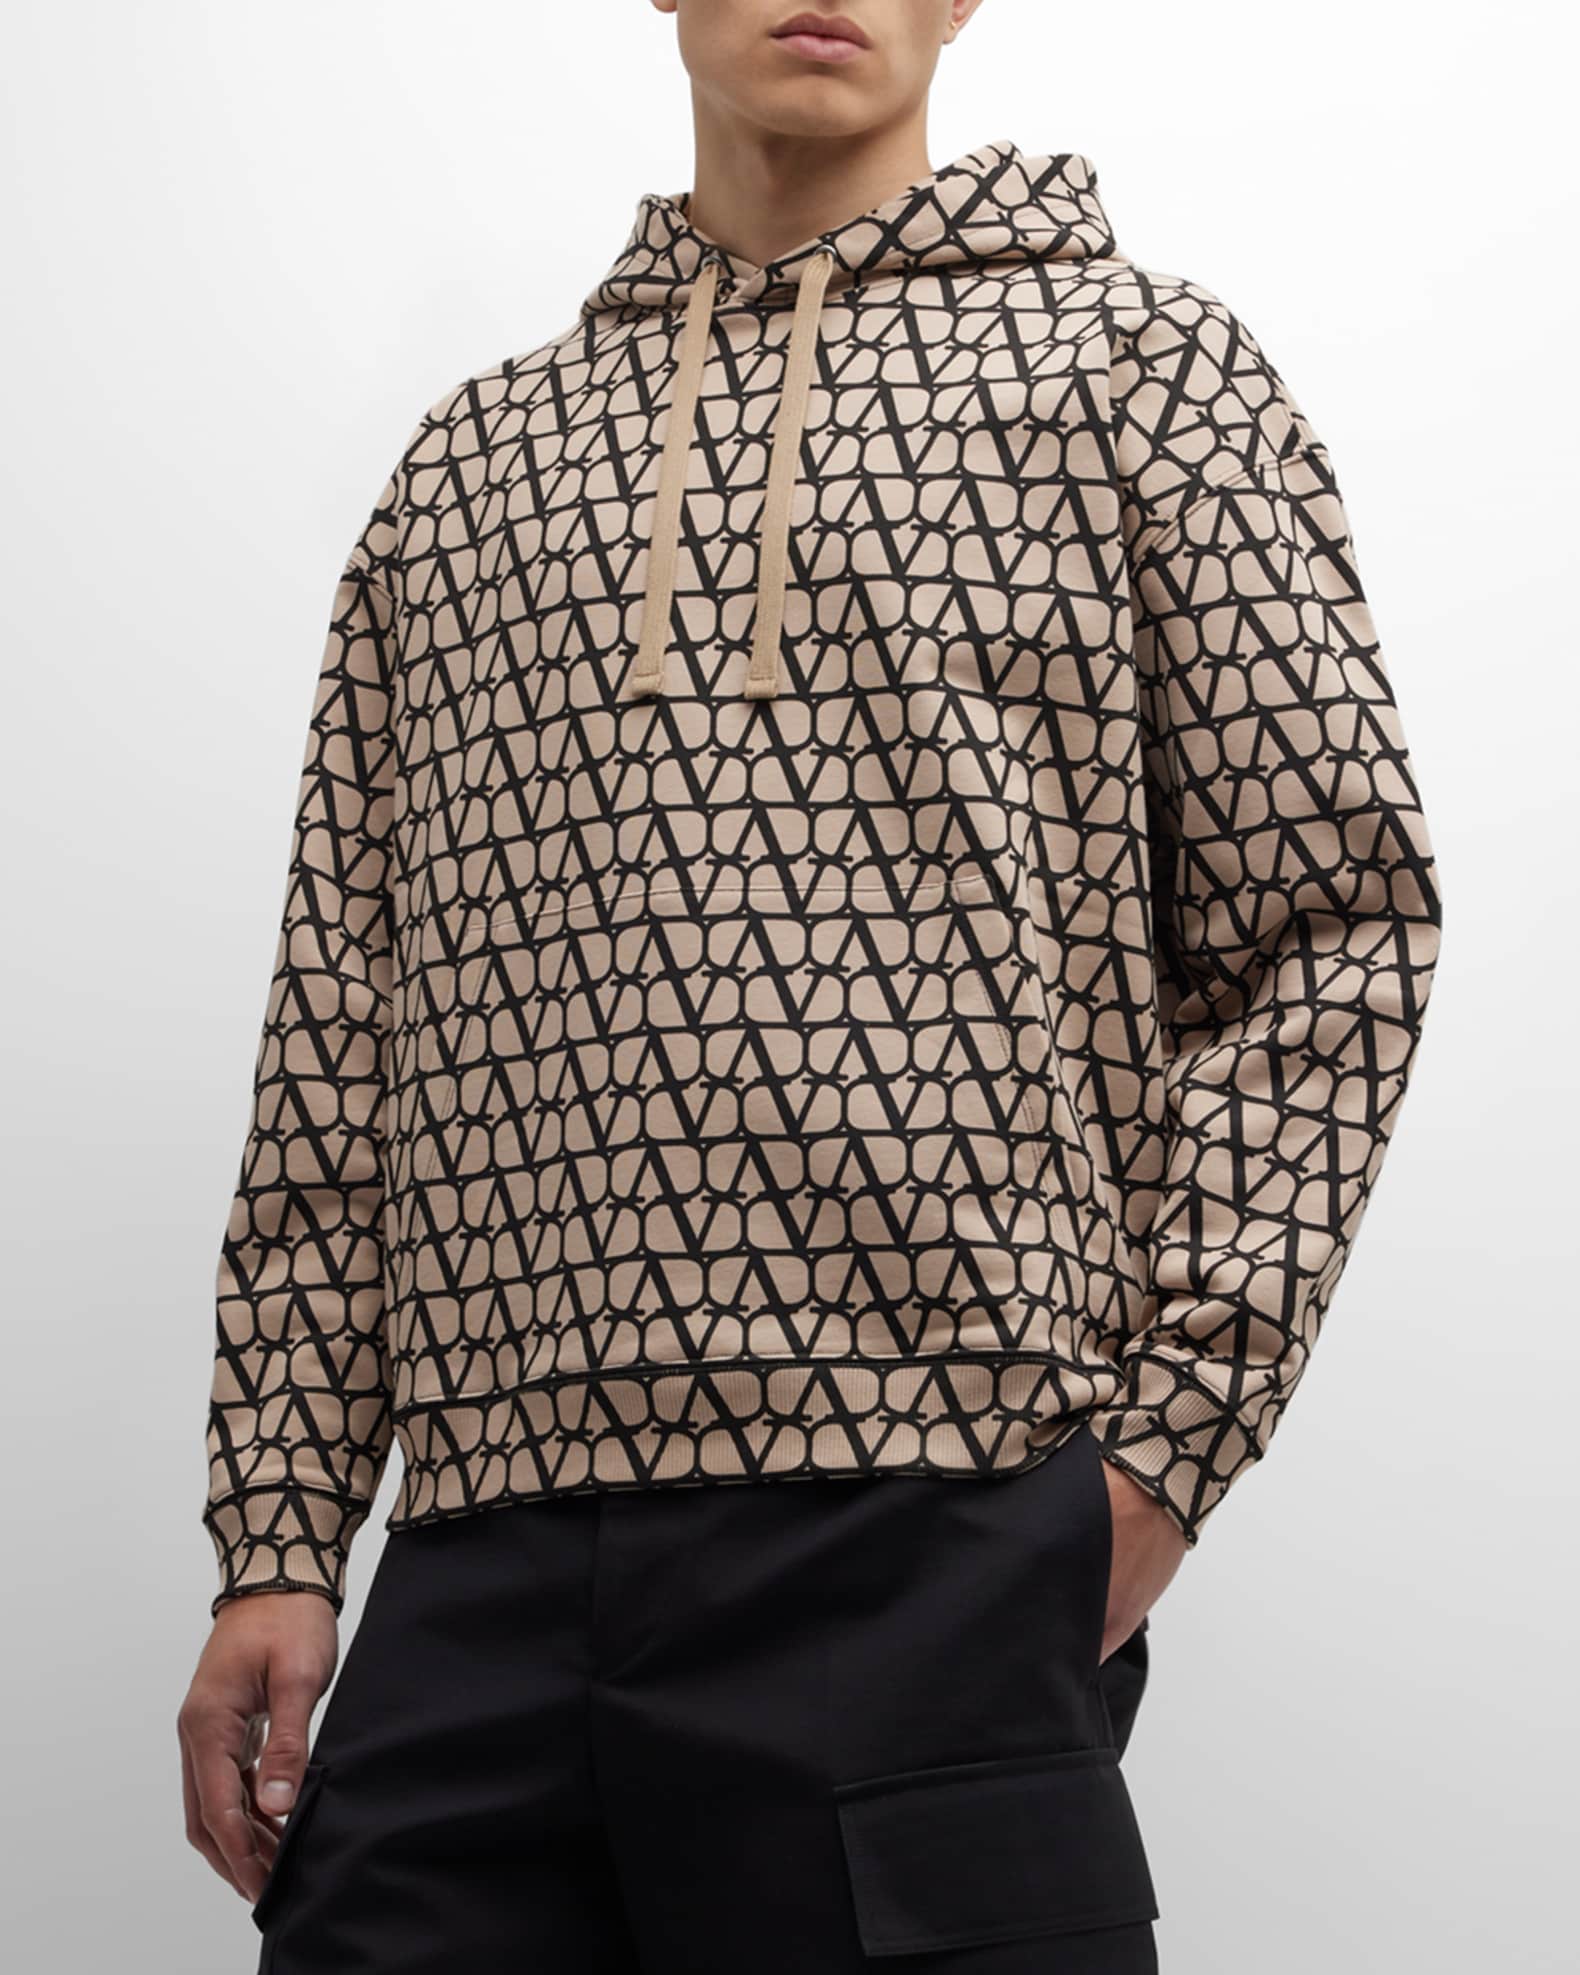 Buy STUSSY Monogram Fullprint Hoodie Sweater Large Size Online in